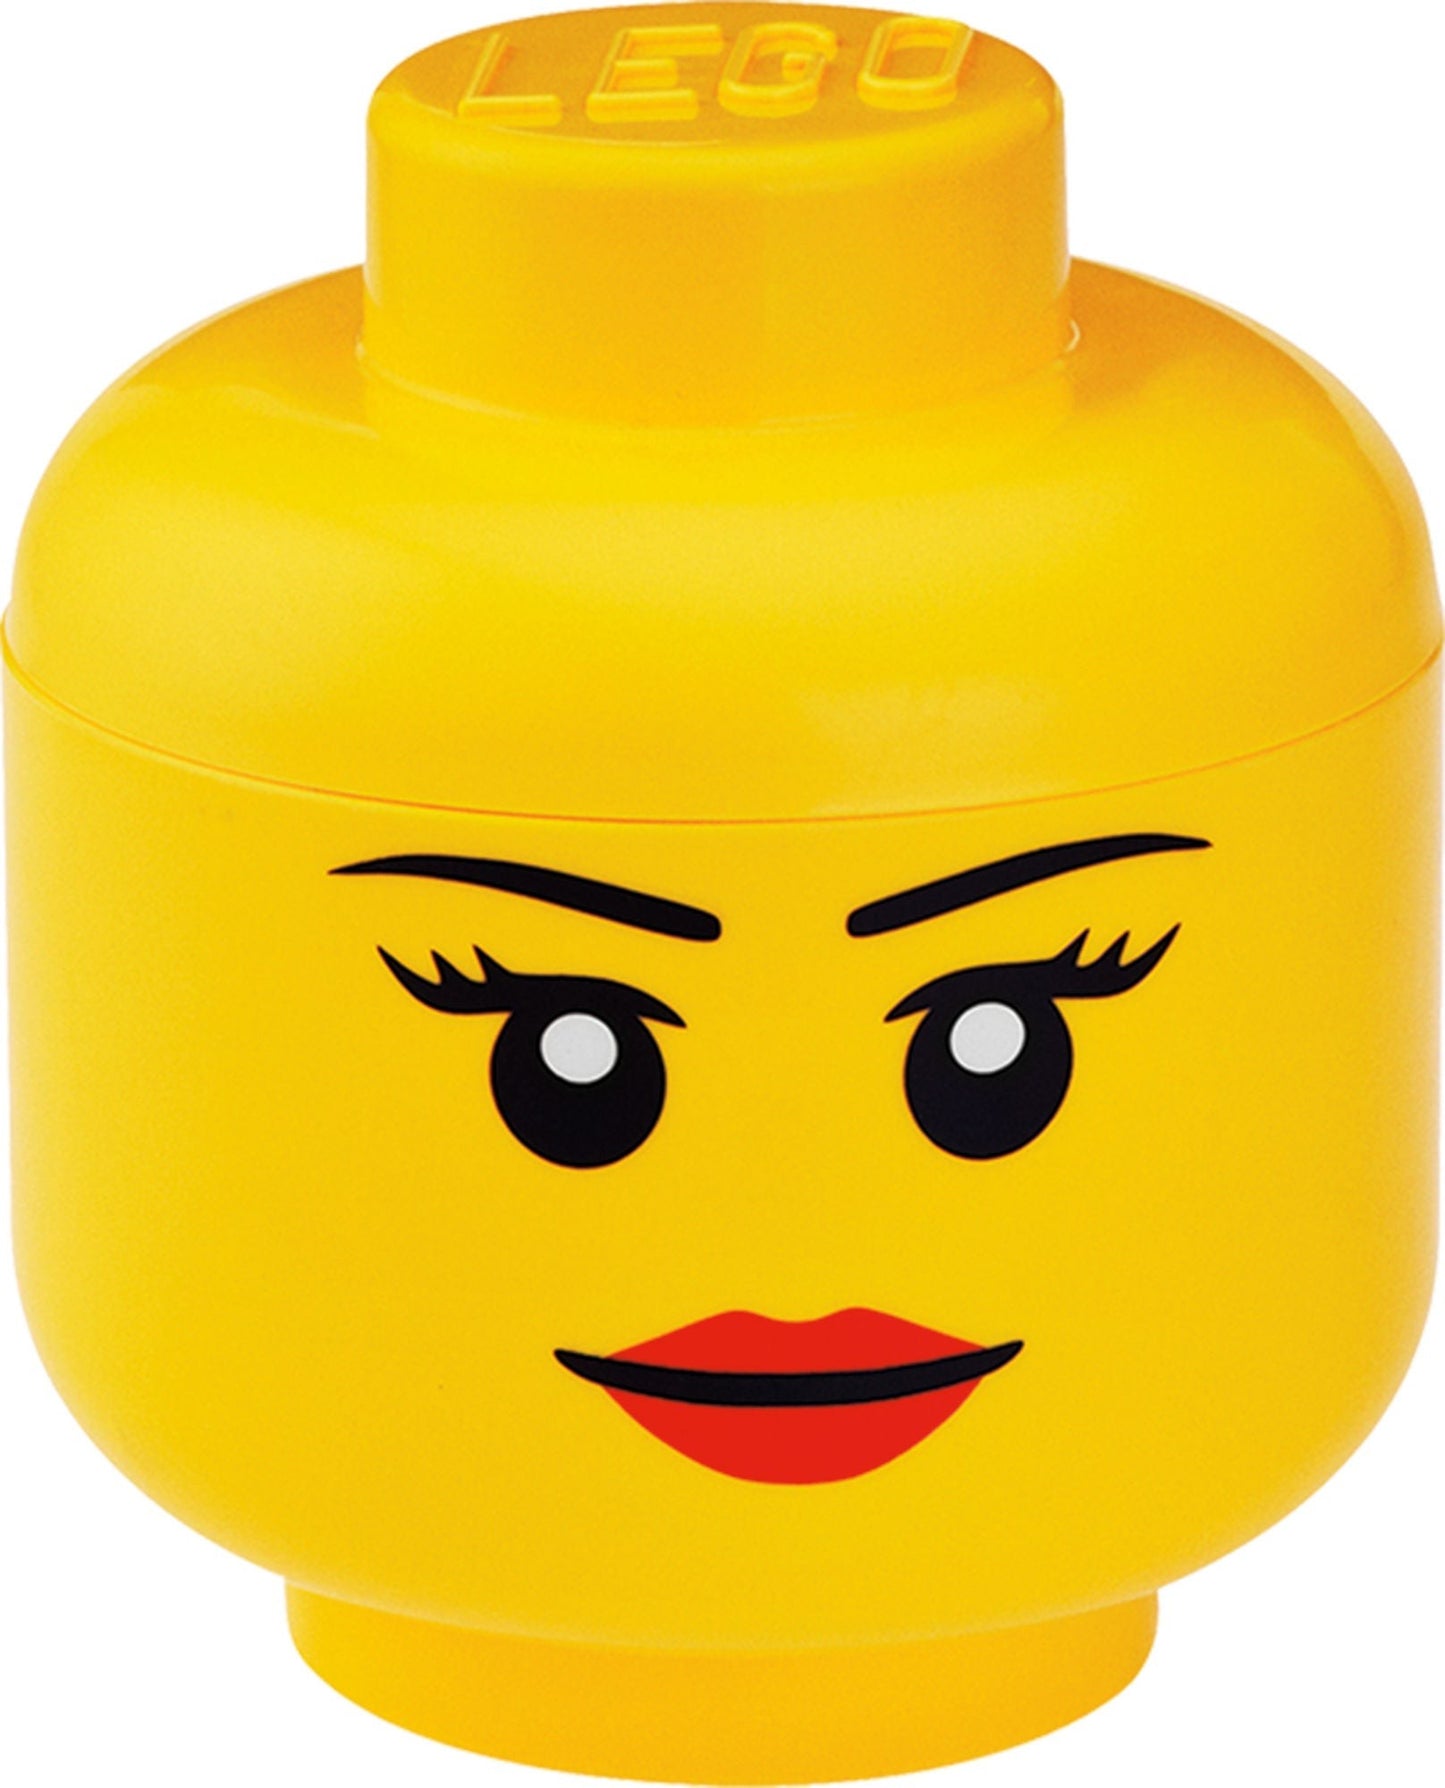 Cutie depozitare LEGO cap minifigurina fata, marimea S